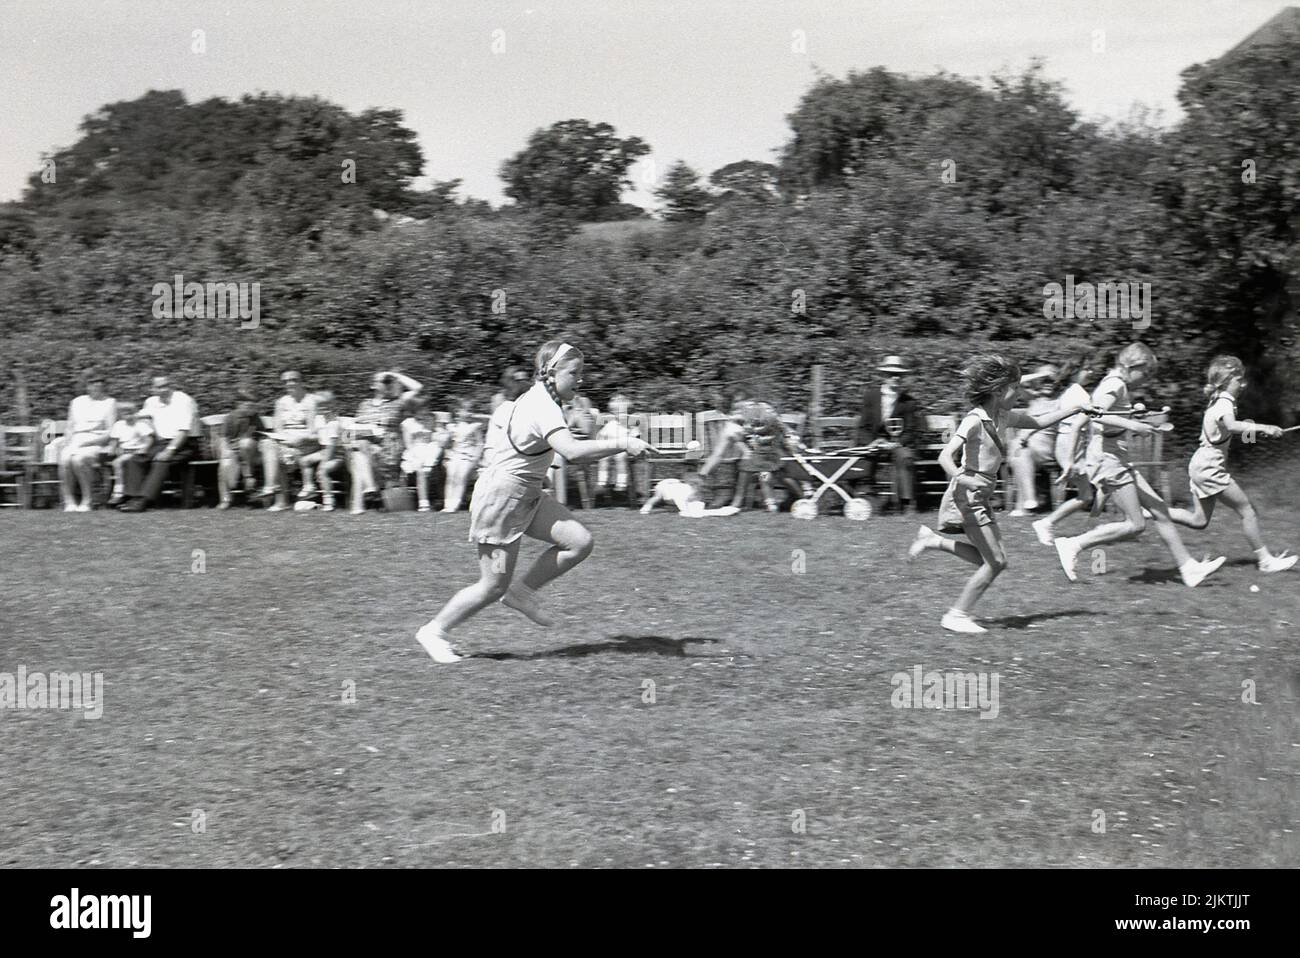 1960, historique, temps d'été et à l'extérieur dans un champ, de jeunes filles en compétition dans une course d'oeuf-et-cuillère, une activité sportive traditionnelle dans les journées de sports primaires, Angleterre, Royaume-Uni Banque D'Images